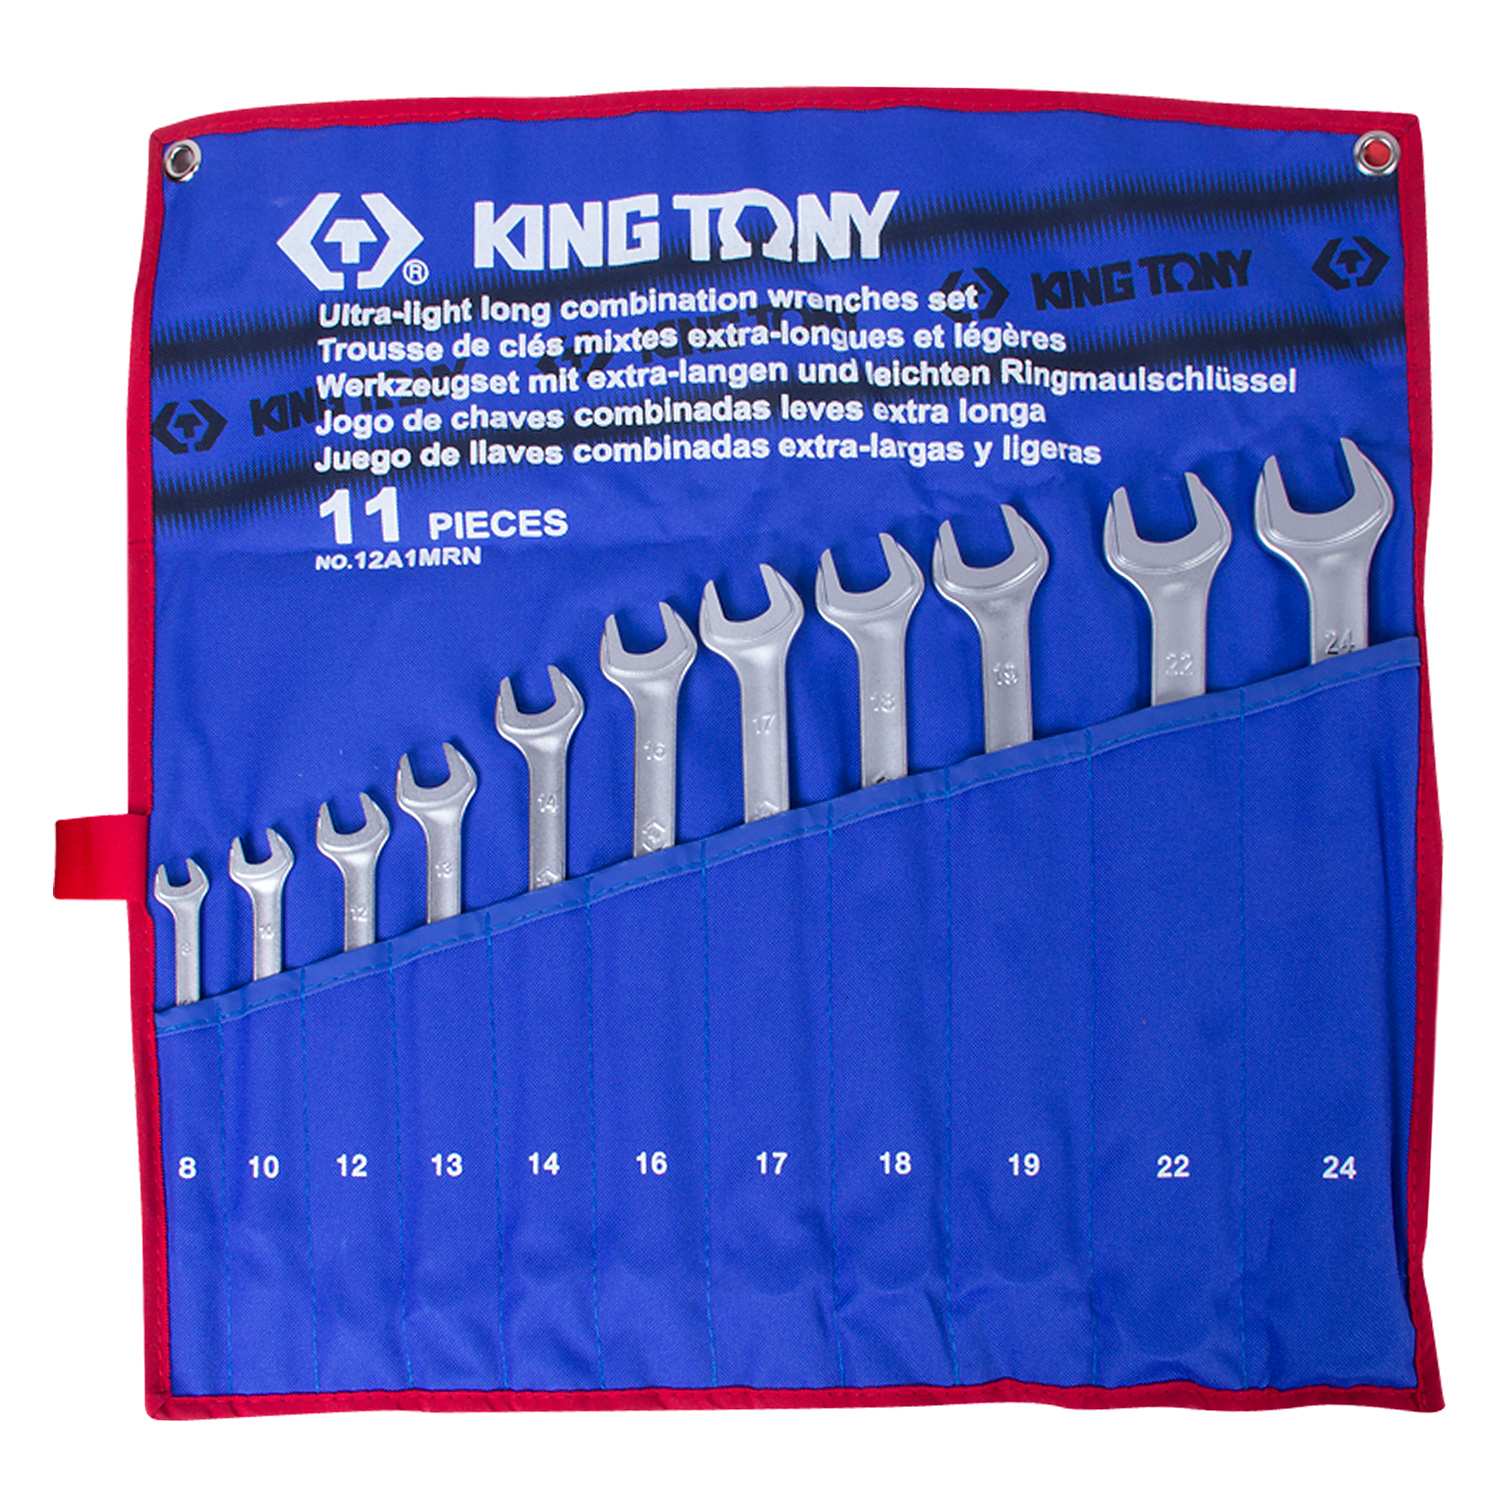 12A1MRN KING TONY Набор комбинированных удлиненных ключей, 8-24 мм, чехол из теторона, 11 предметов